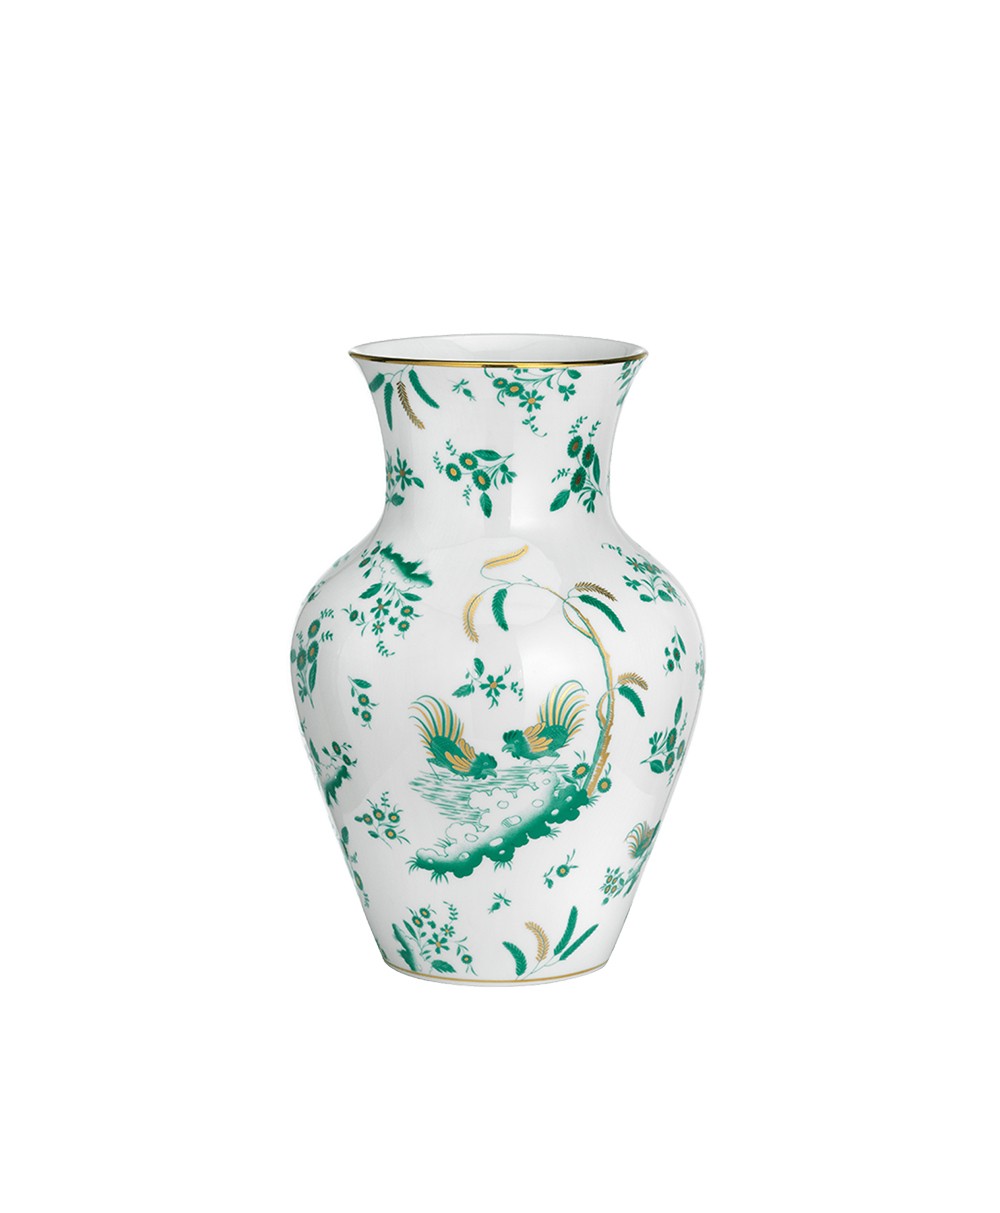 Produktbild "Oro Di Doccia Vase S" von Ginori 1735 im RAUM Concept store